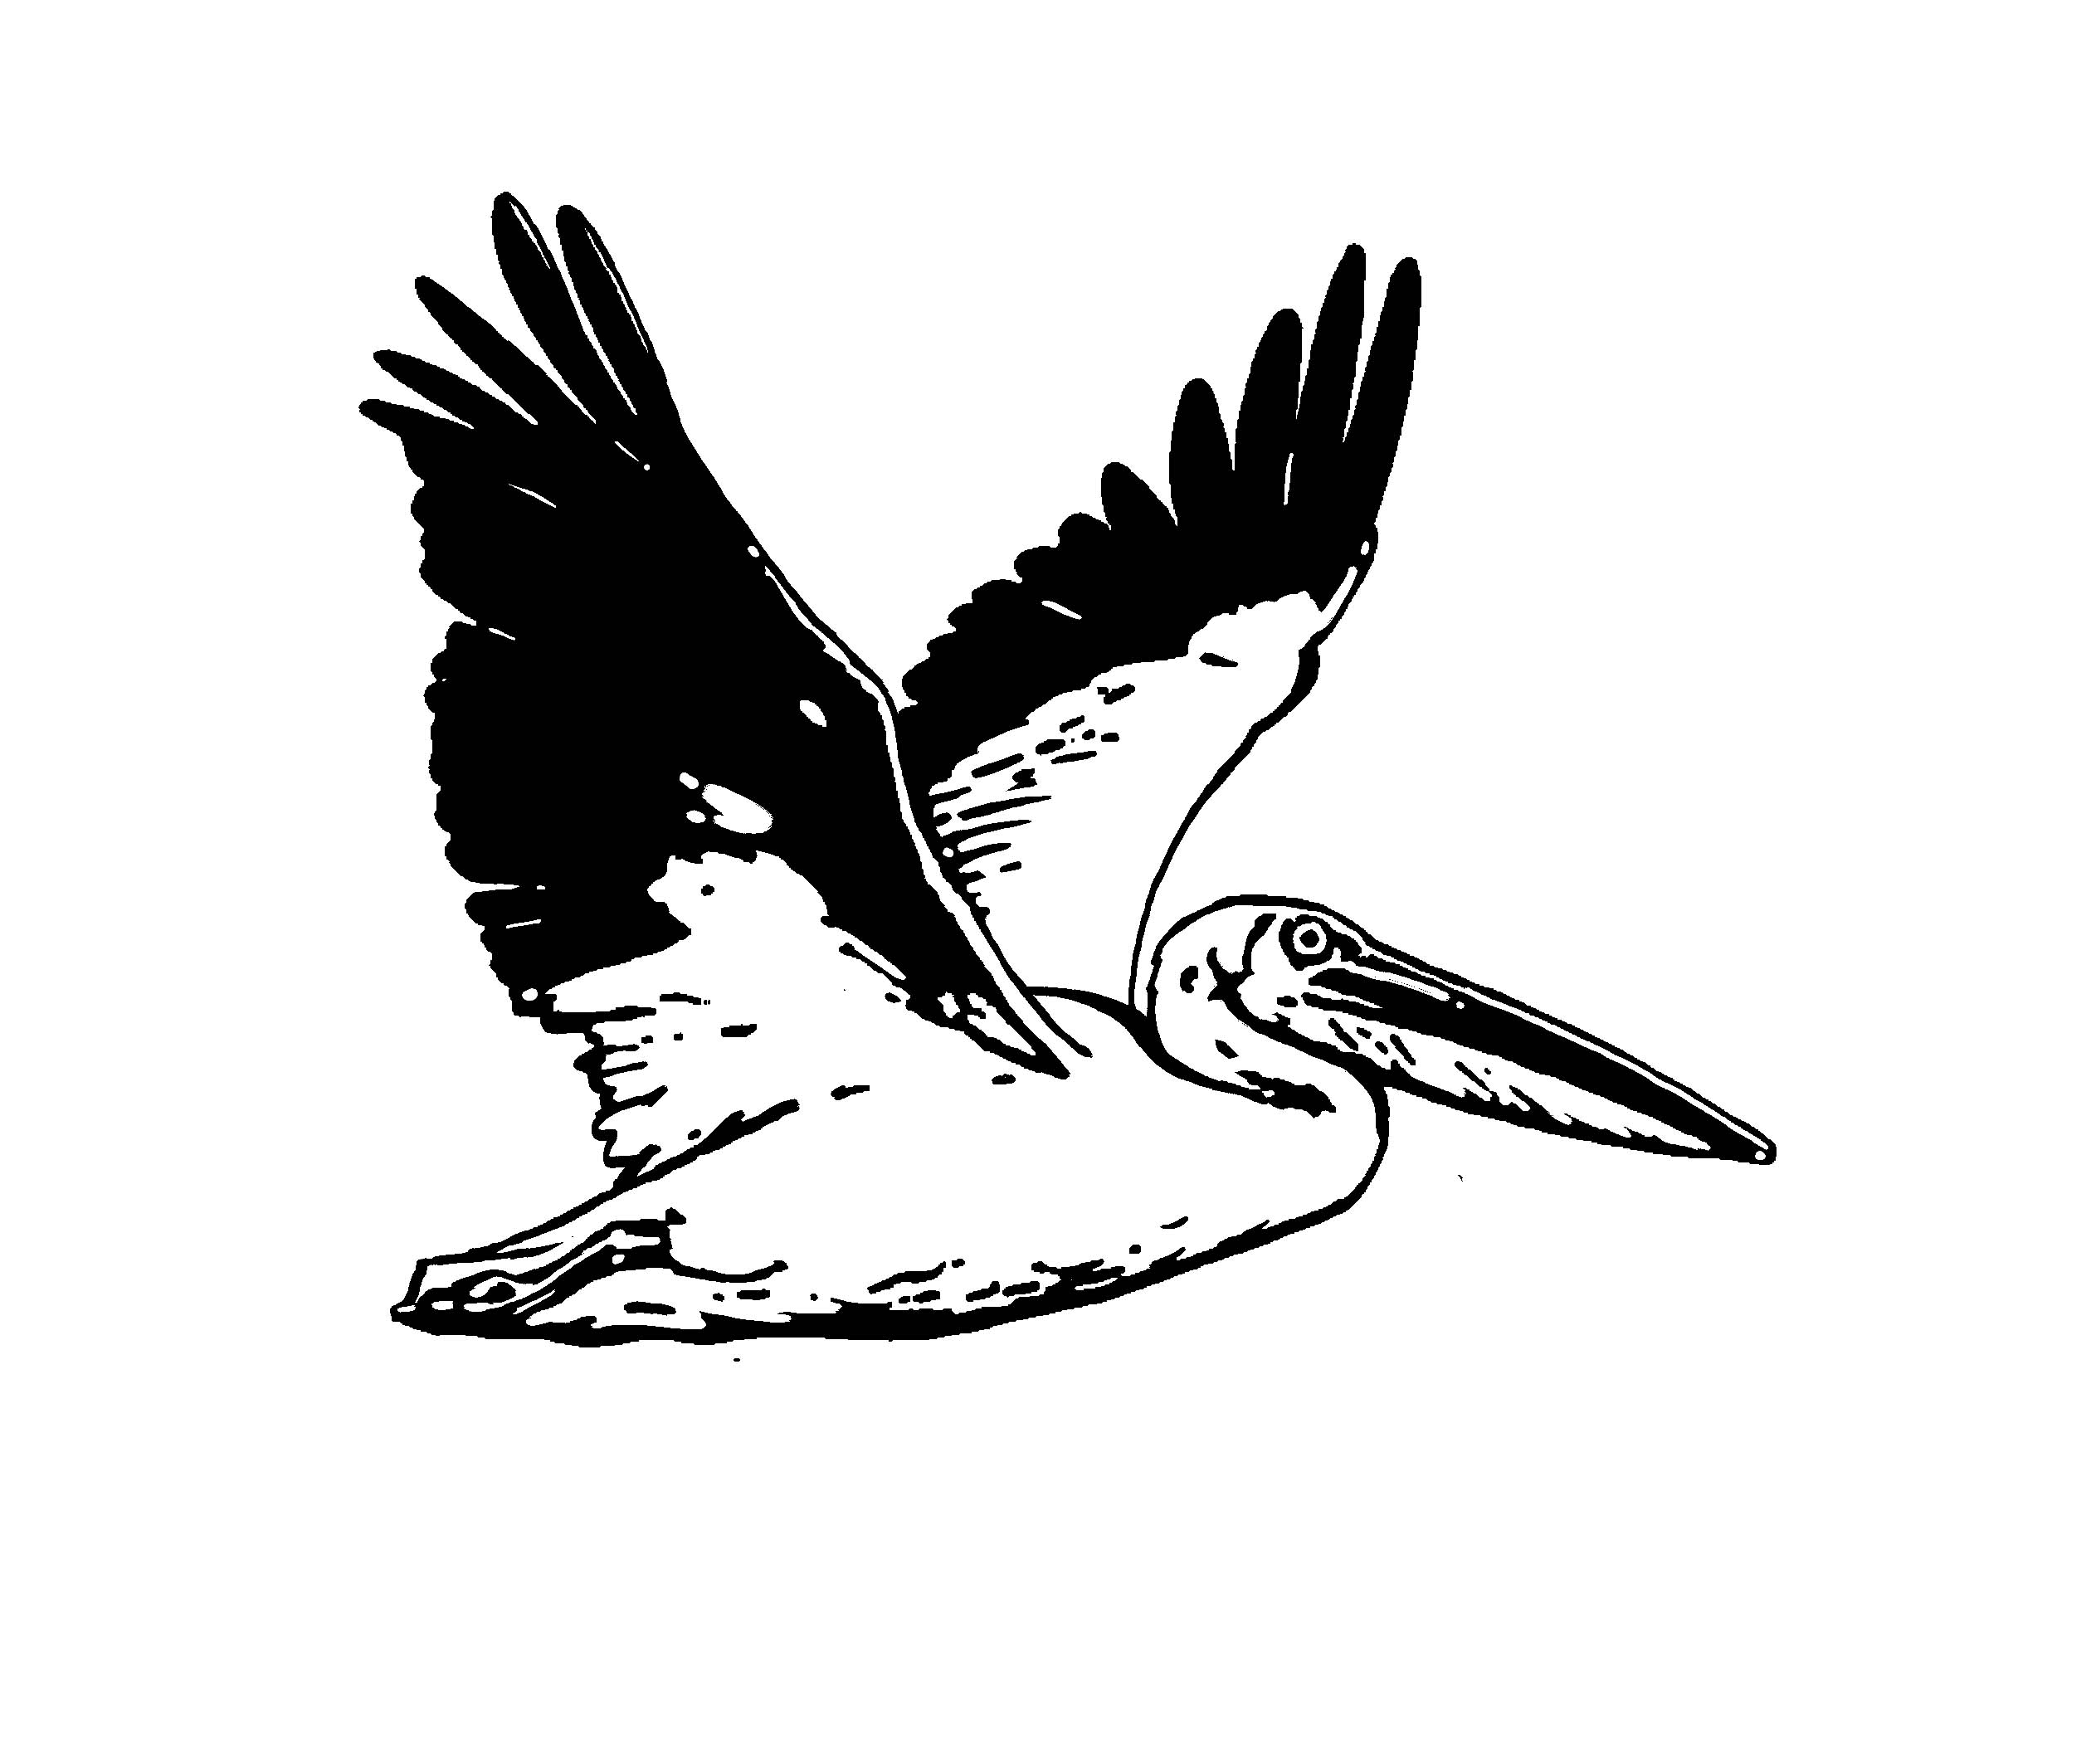 Pelican Clip Art